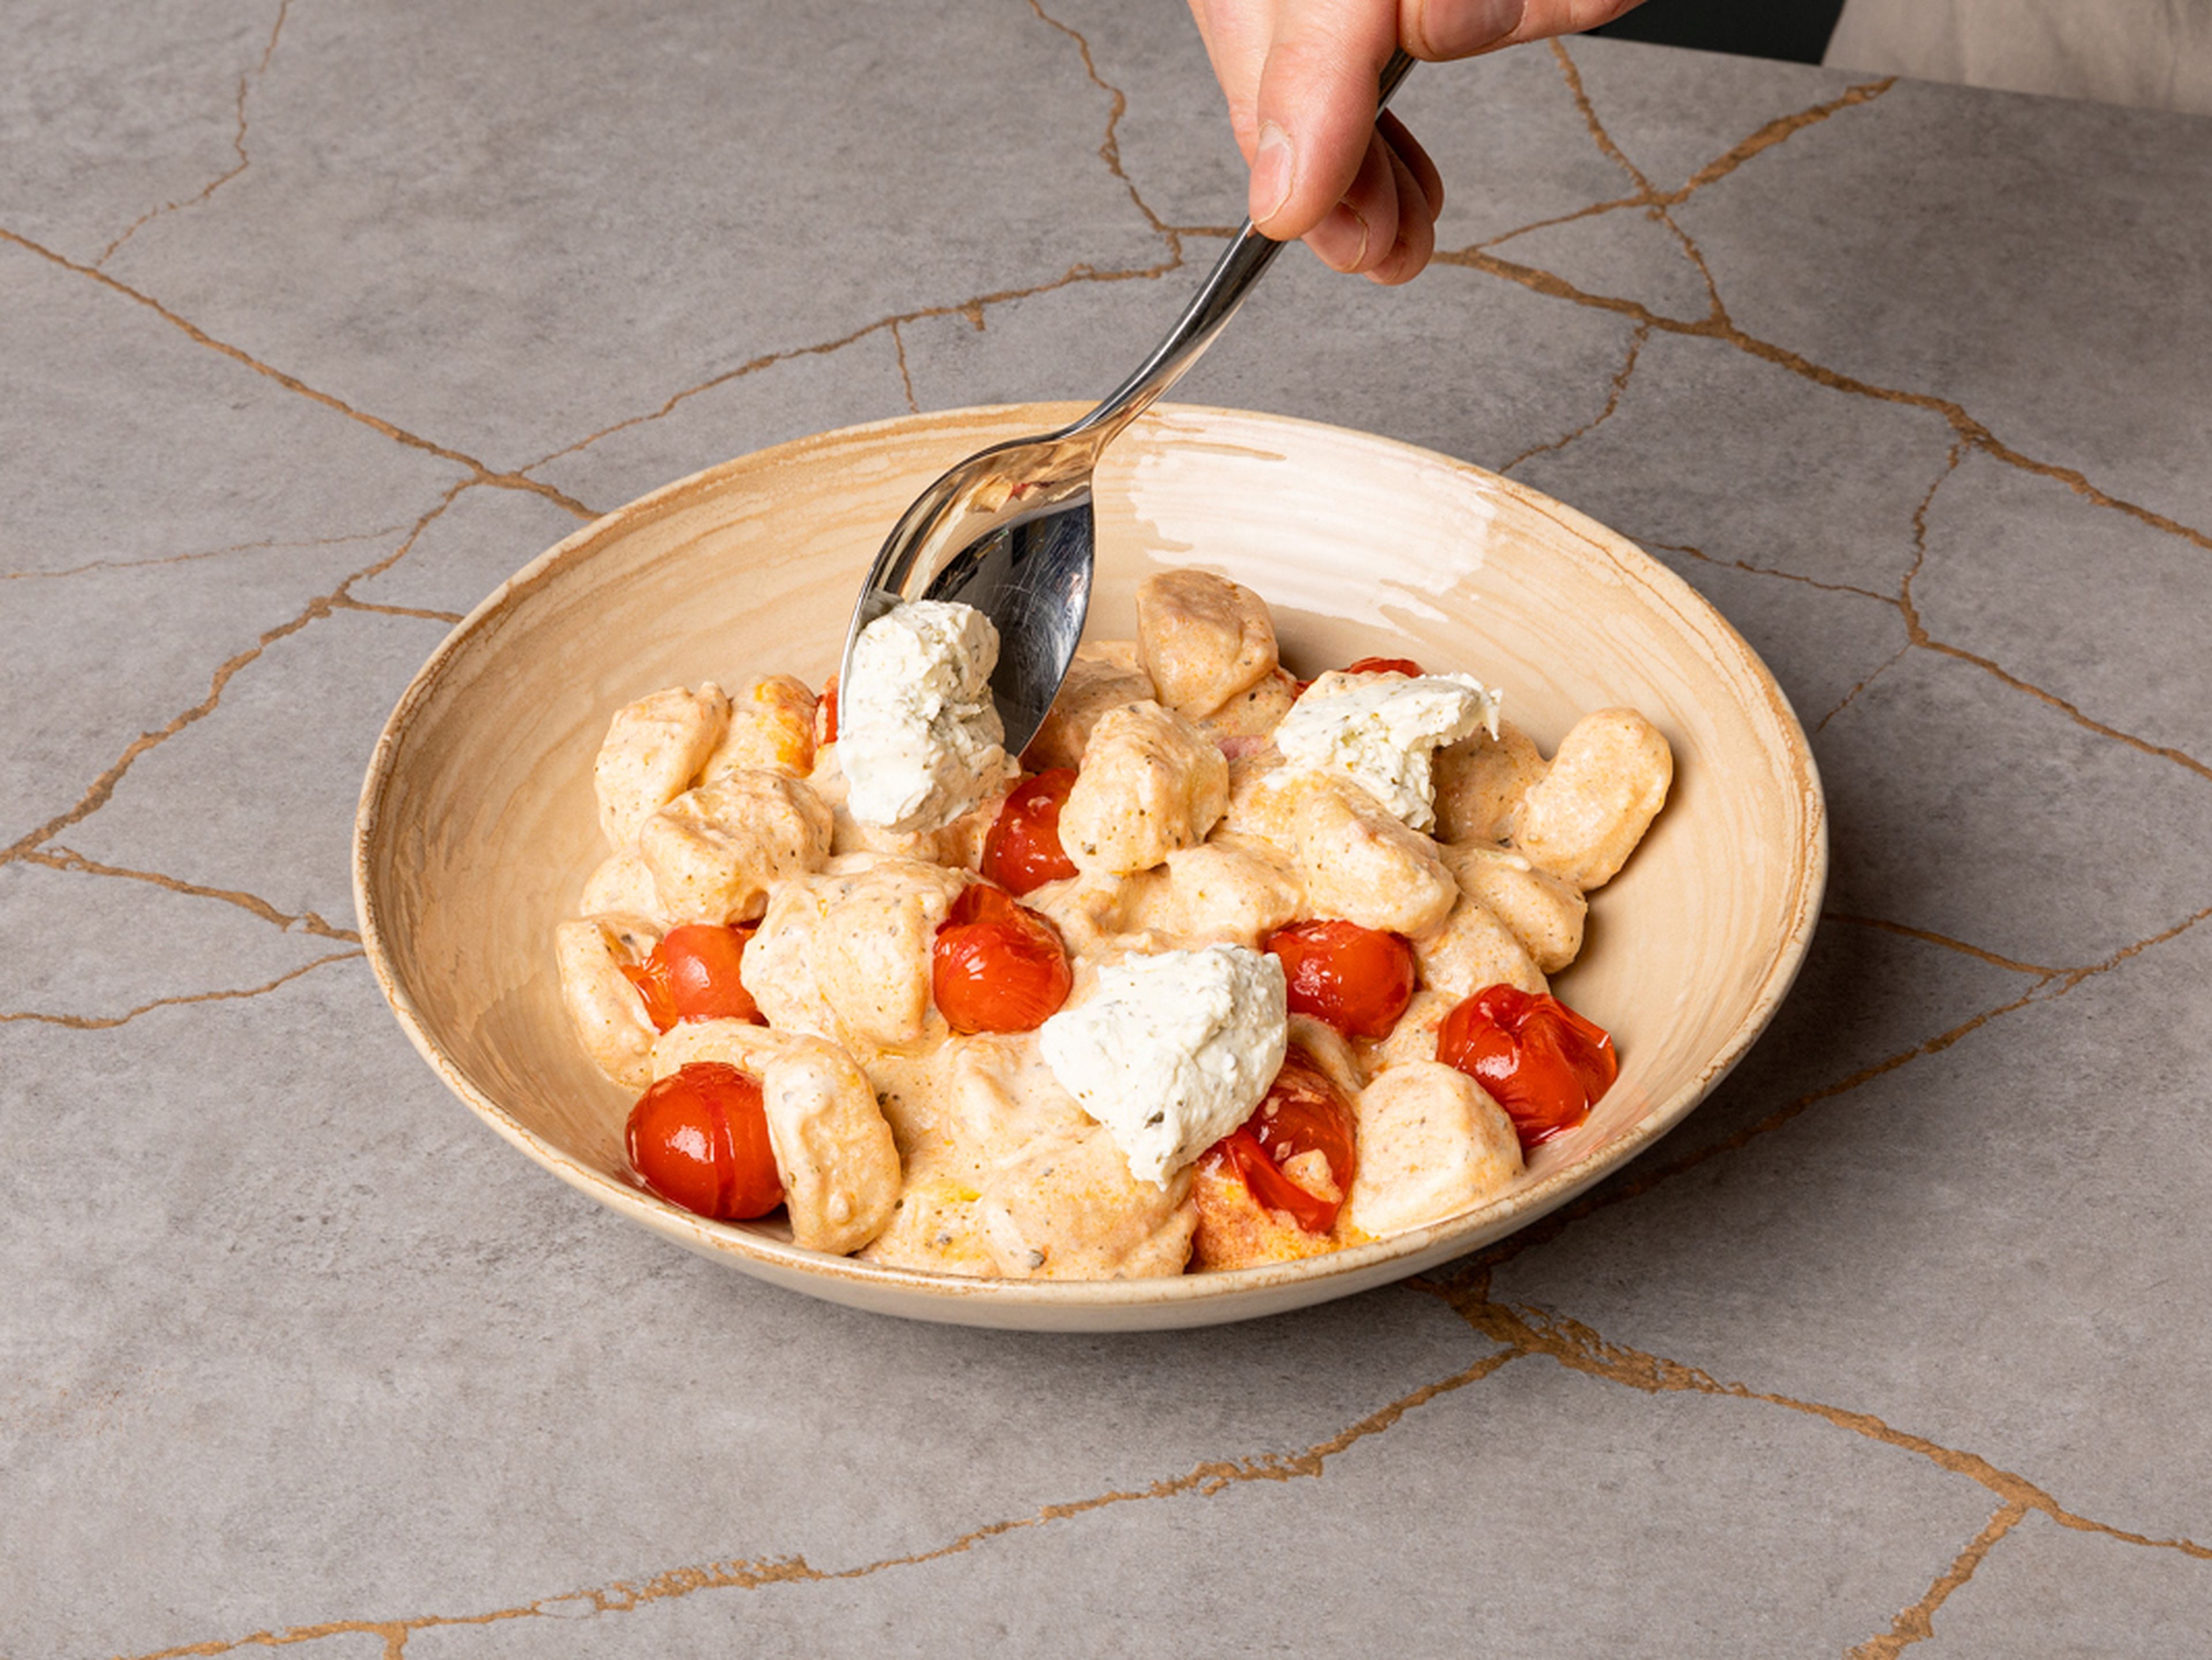 Gnocchi auf Tellern anrichten. Restlichen Kräuterfrischkäse in Flocken auf die Gnocchi verteilen, mit Frühlingszwiebelgrün bestreuen und optional mit frischem Basilikum garnieren. Guten Appetit!